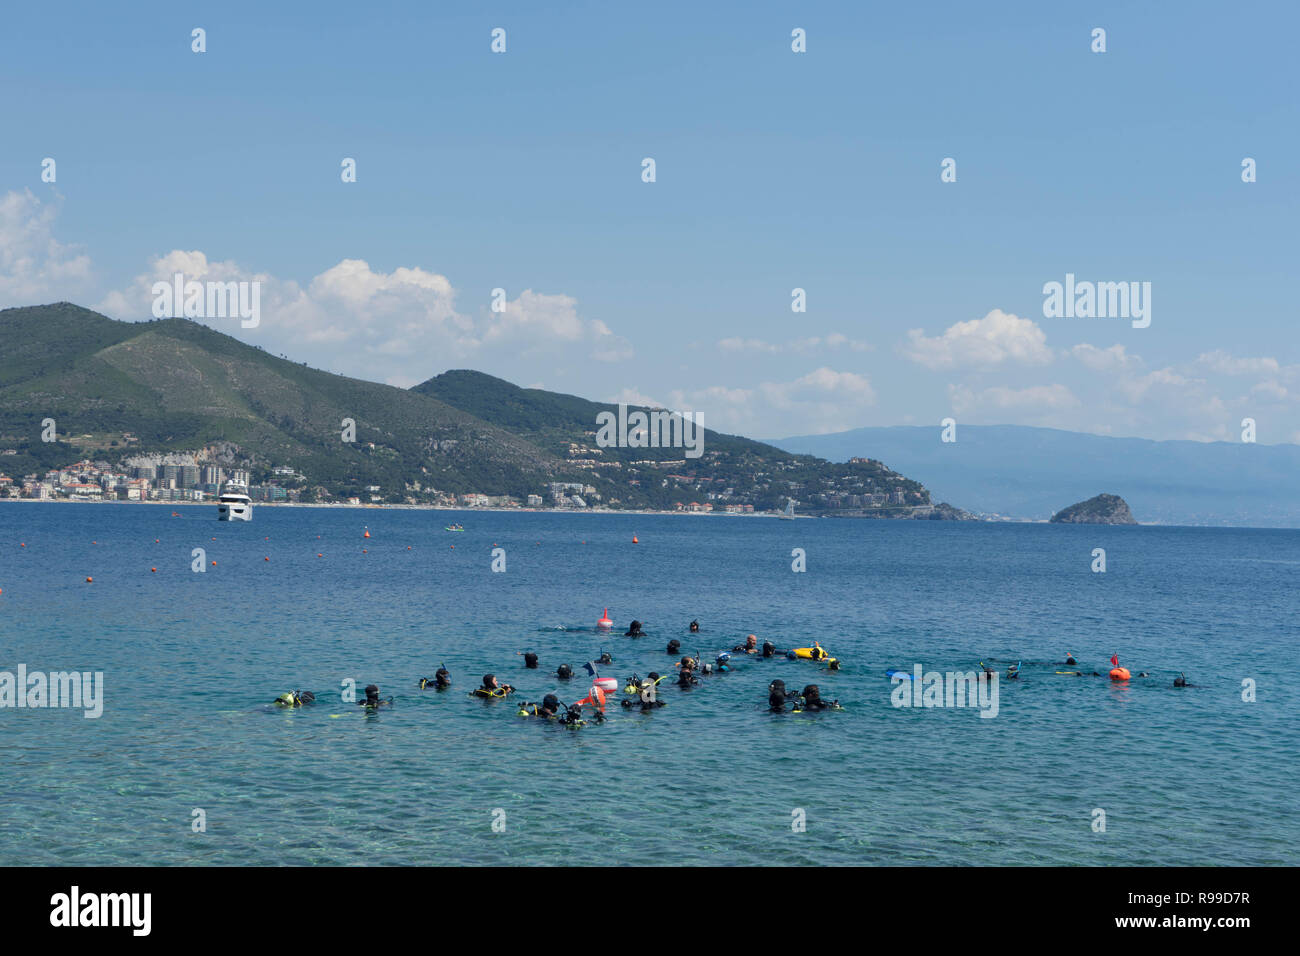 Tauchen im Meer bei Noli, Ligurien - Italien Stockfoto